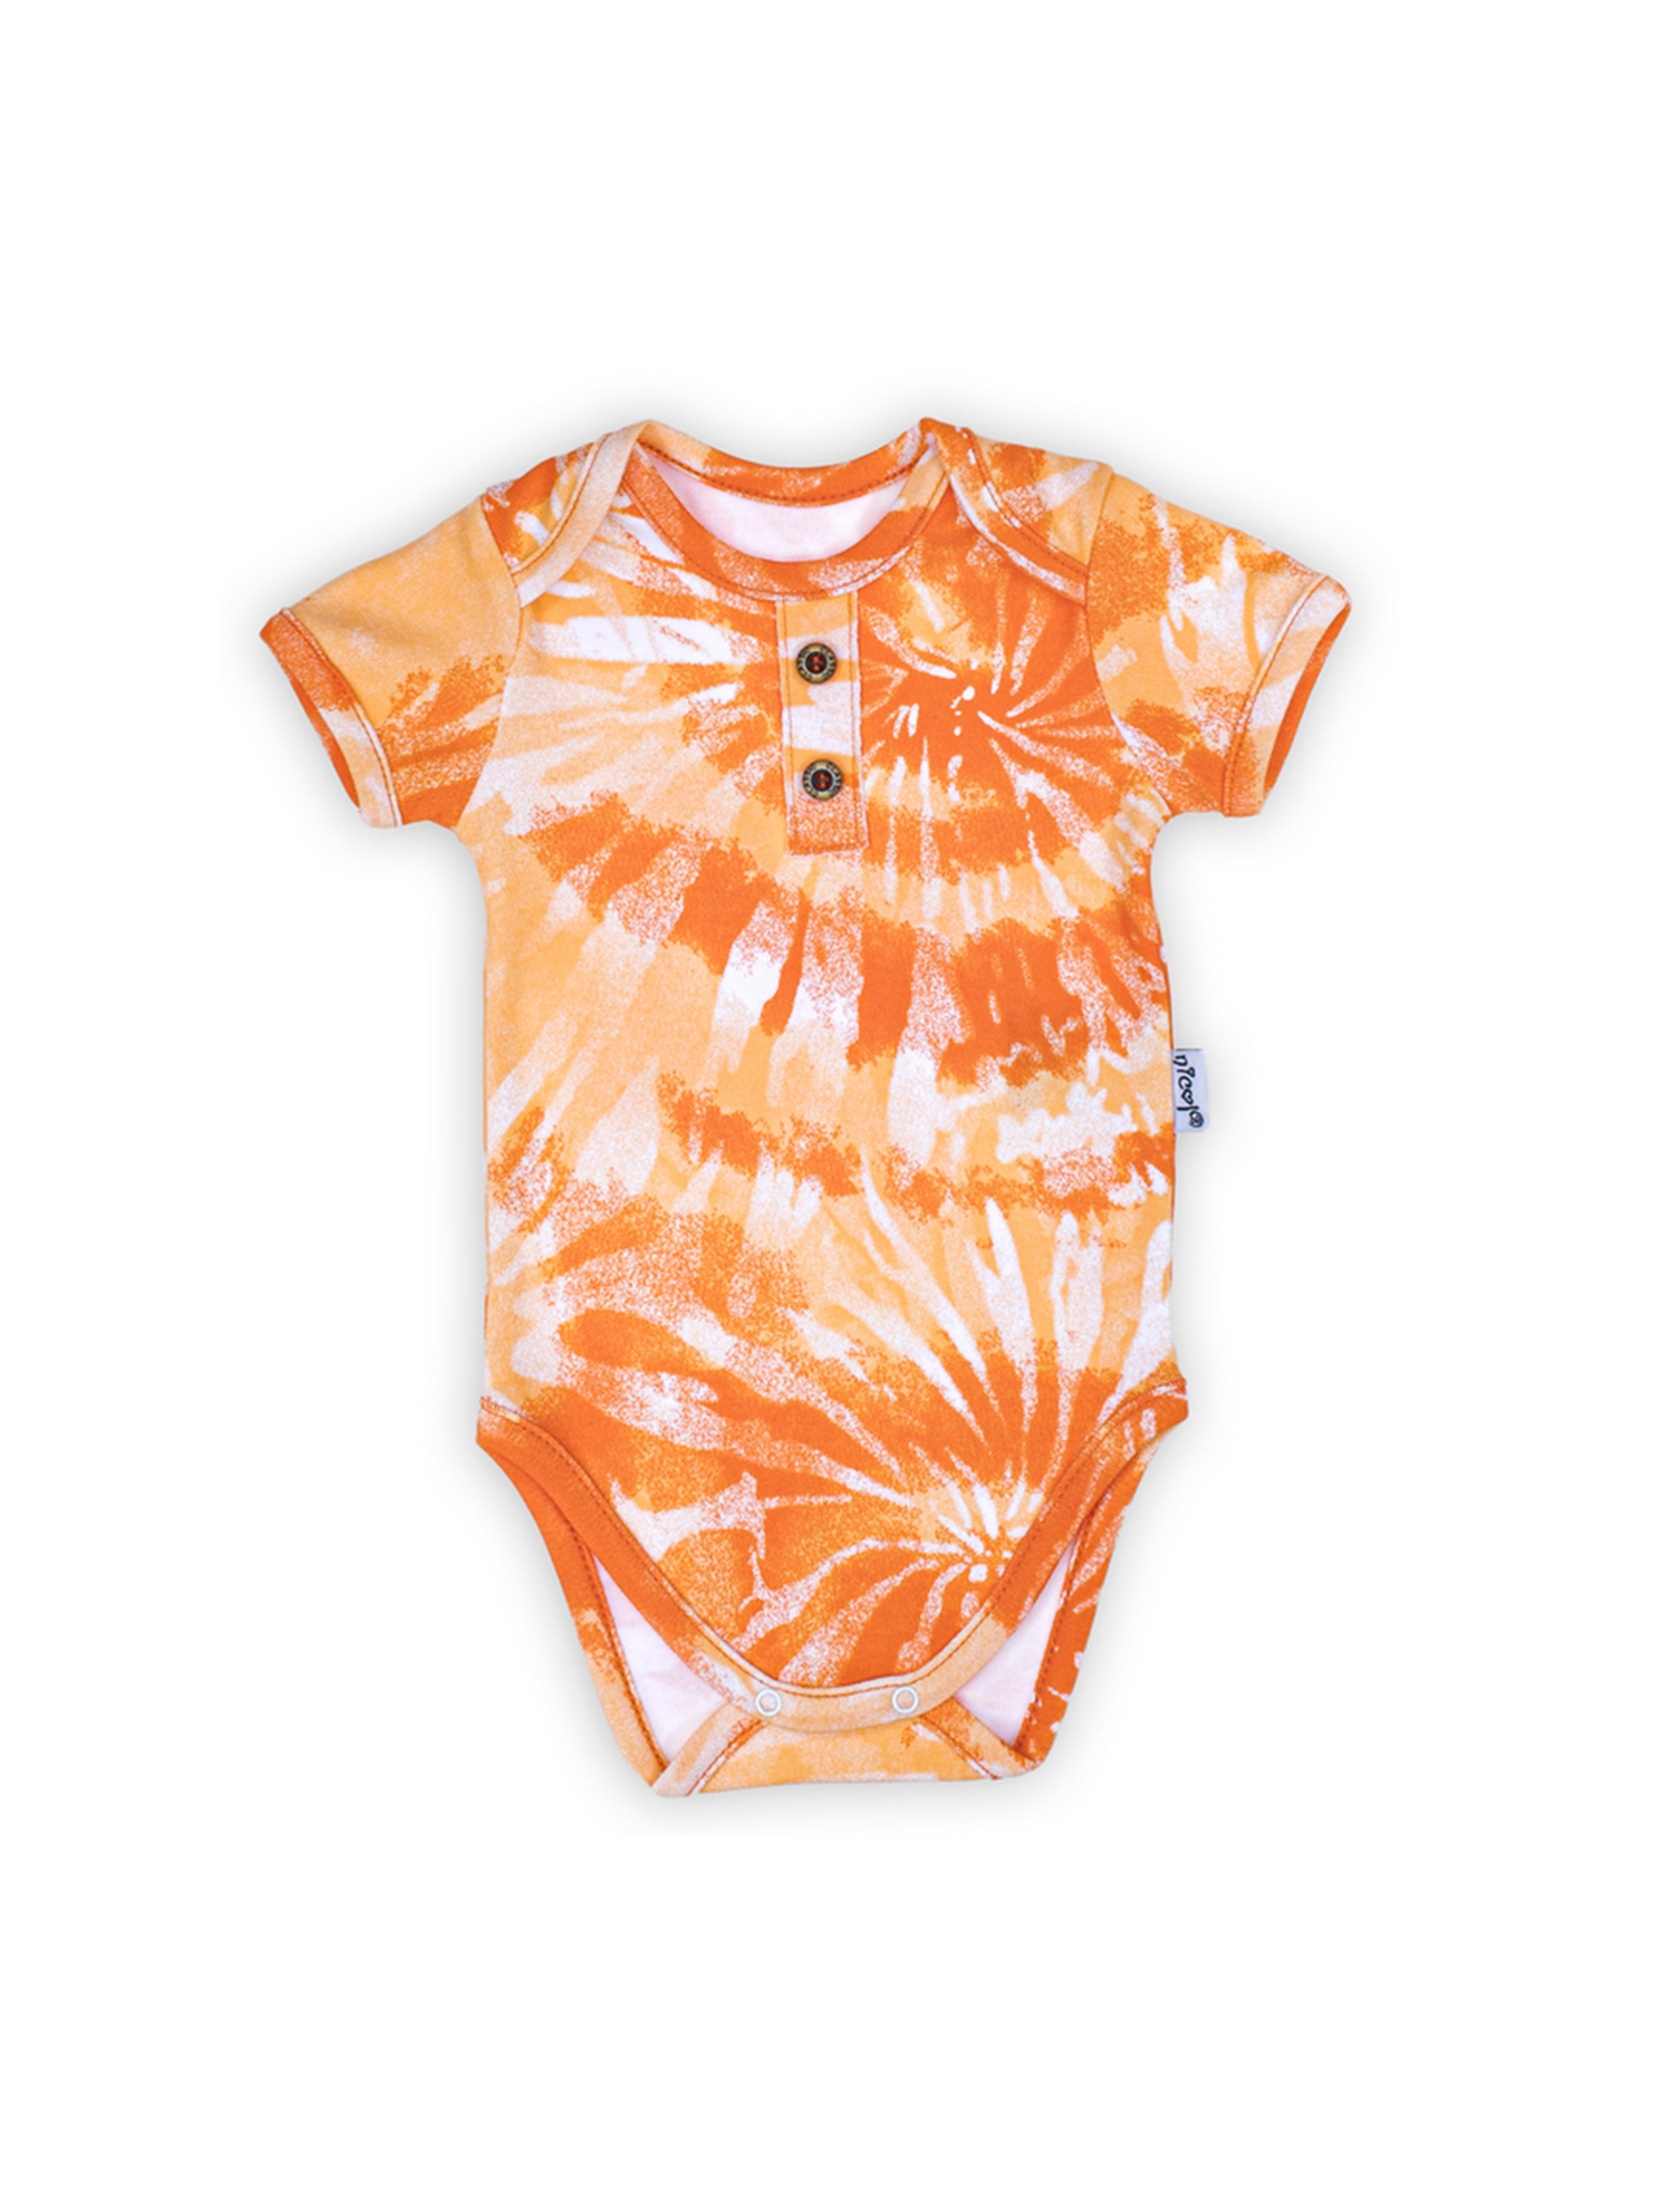 Bawełniane body niemowlęce we wzory pomarańczowe